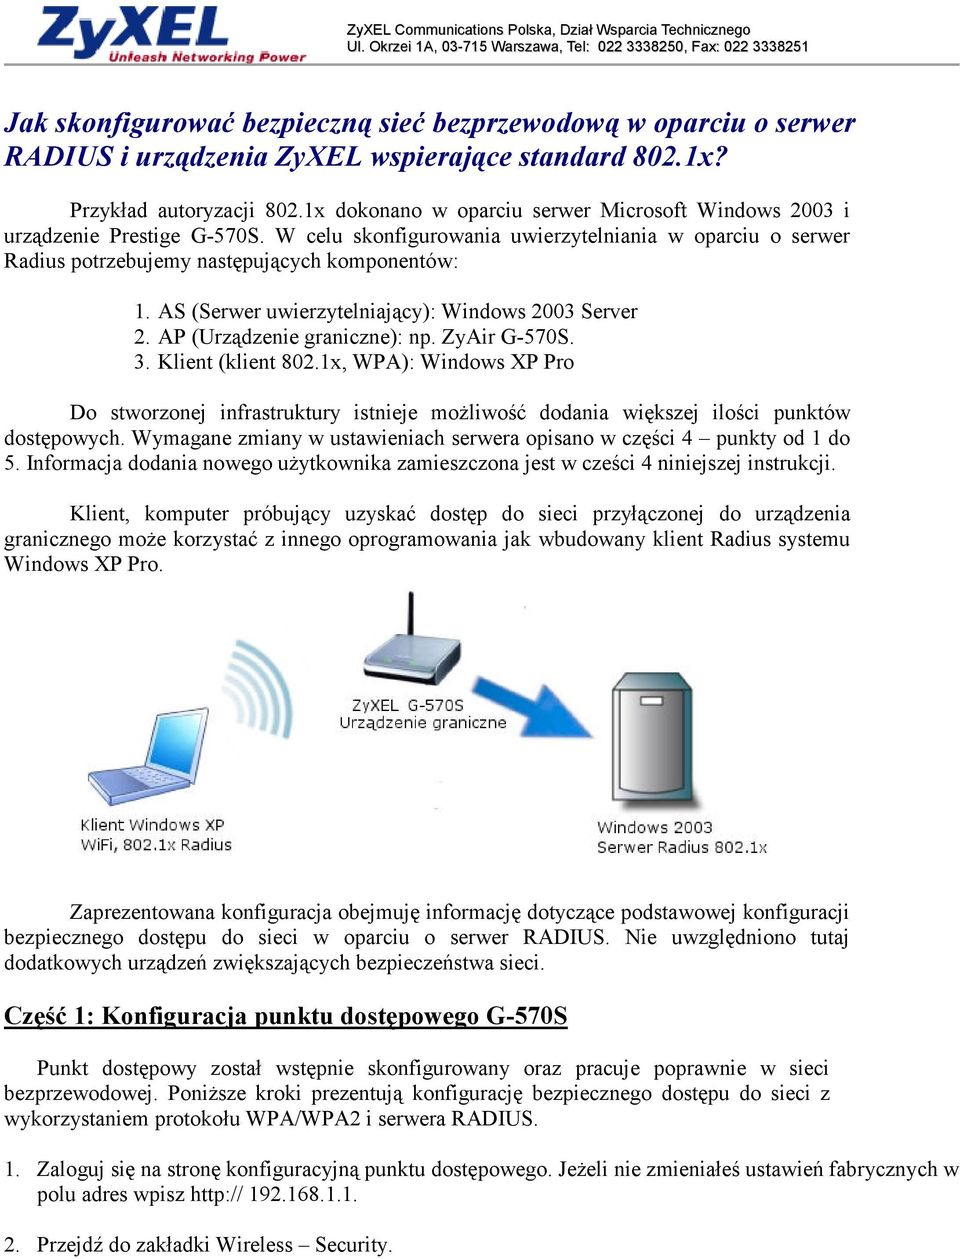 AS (Serwer uwierzytelniający): Windows 2003 Server 2. AP (Urządzenie graniczne): np. ZyAir G-570S. 3. Klient (klient 802.